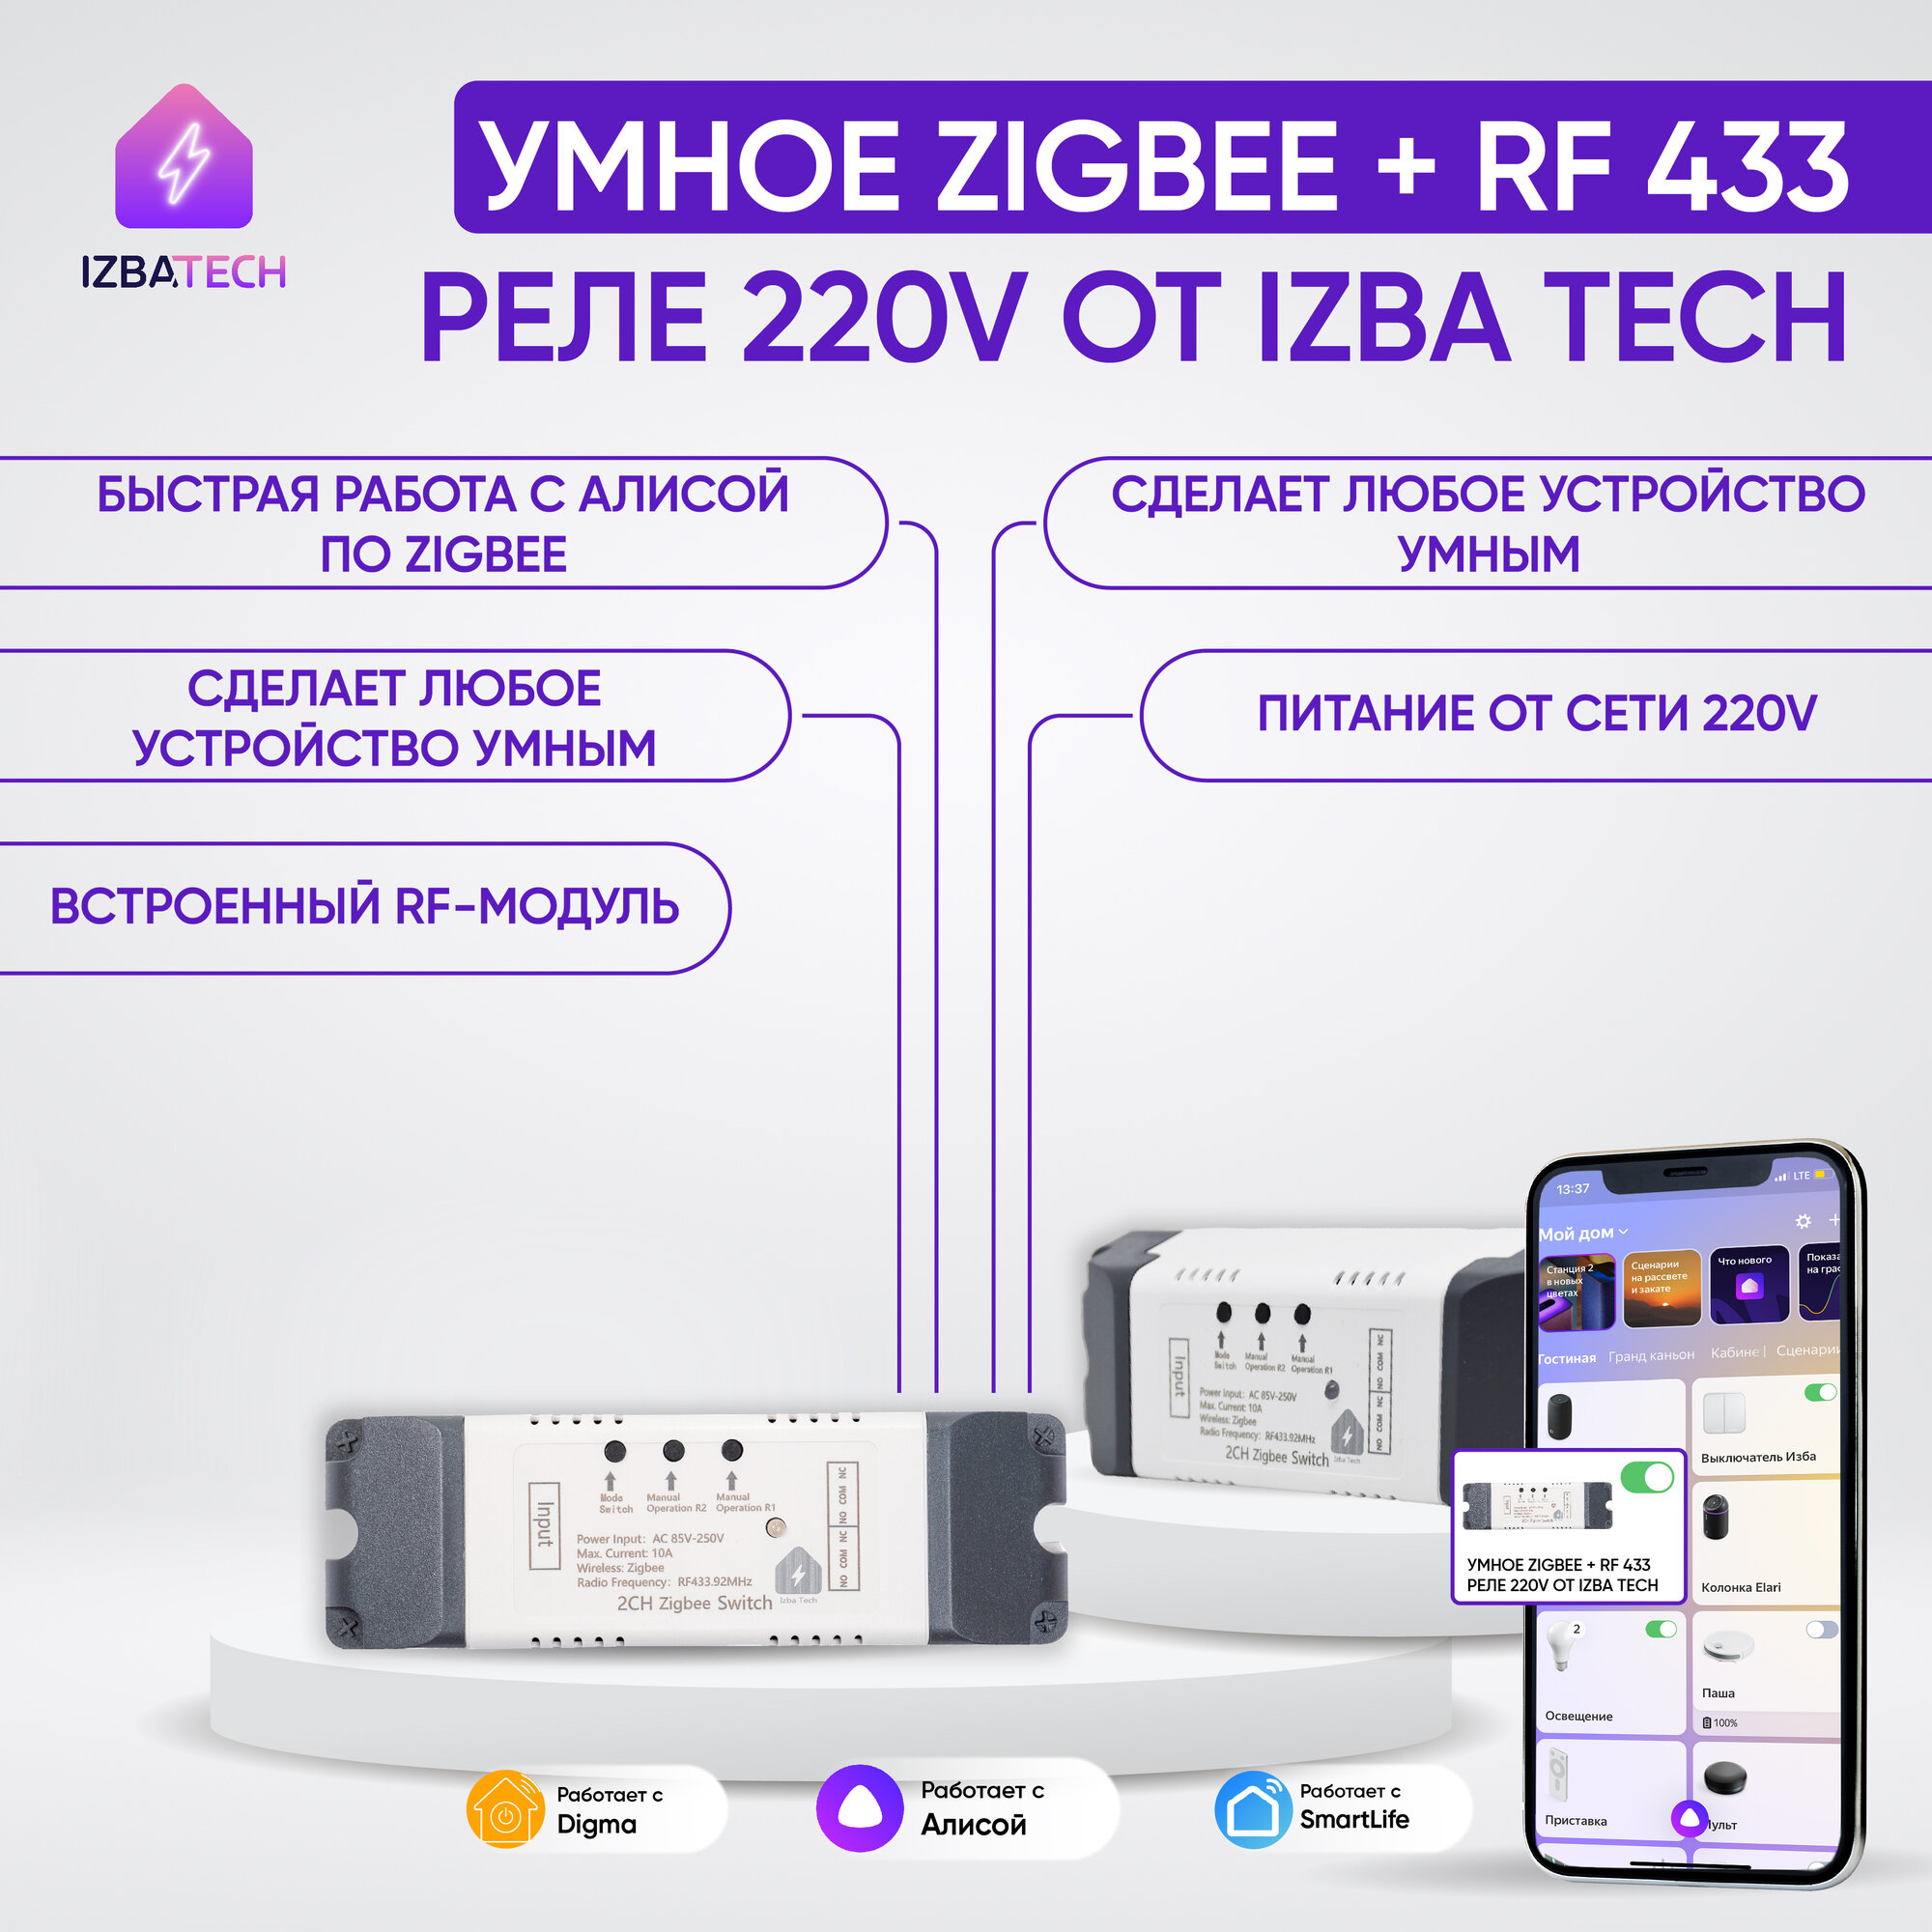 Новое Умное реле на ДВА канала для Яндекс Алисы от Tuya 220 вольт с корпусом теперь Zigbee+RF 433